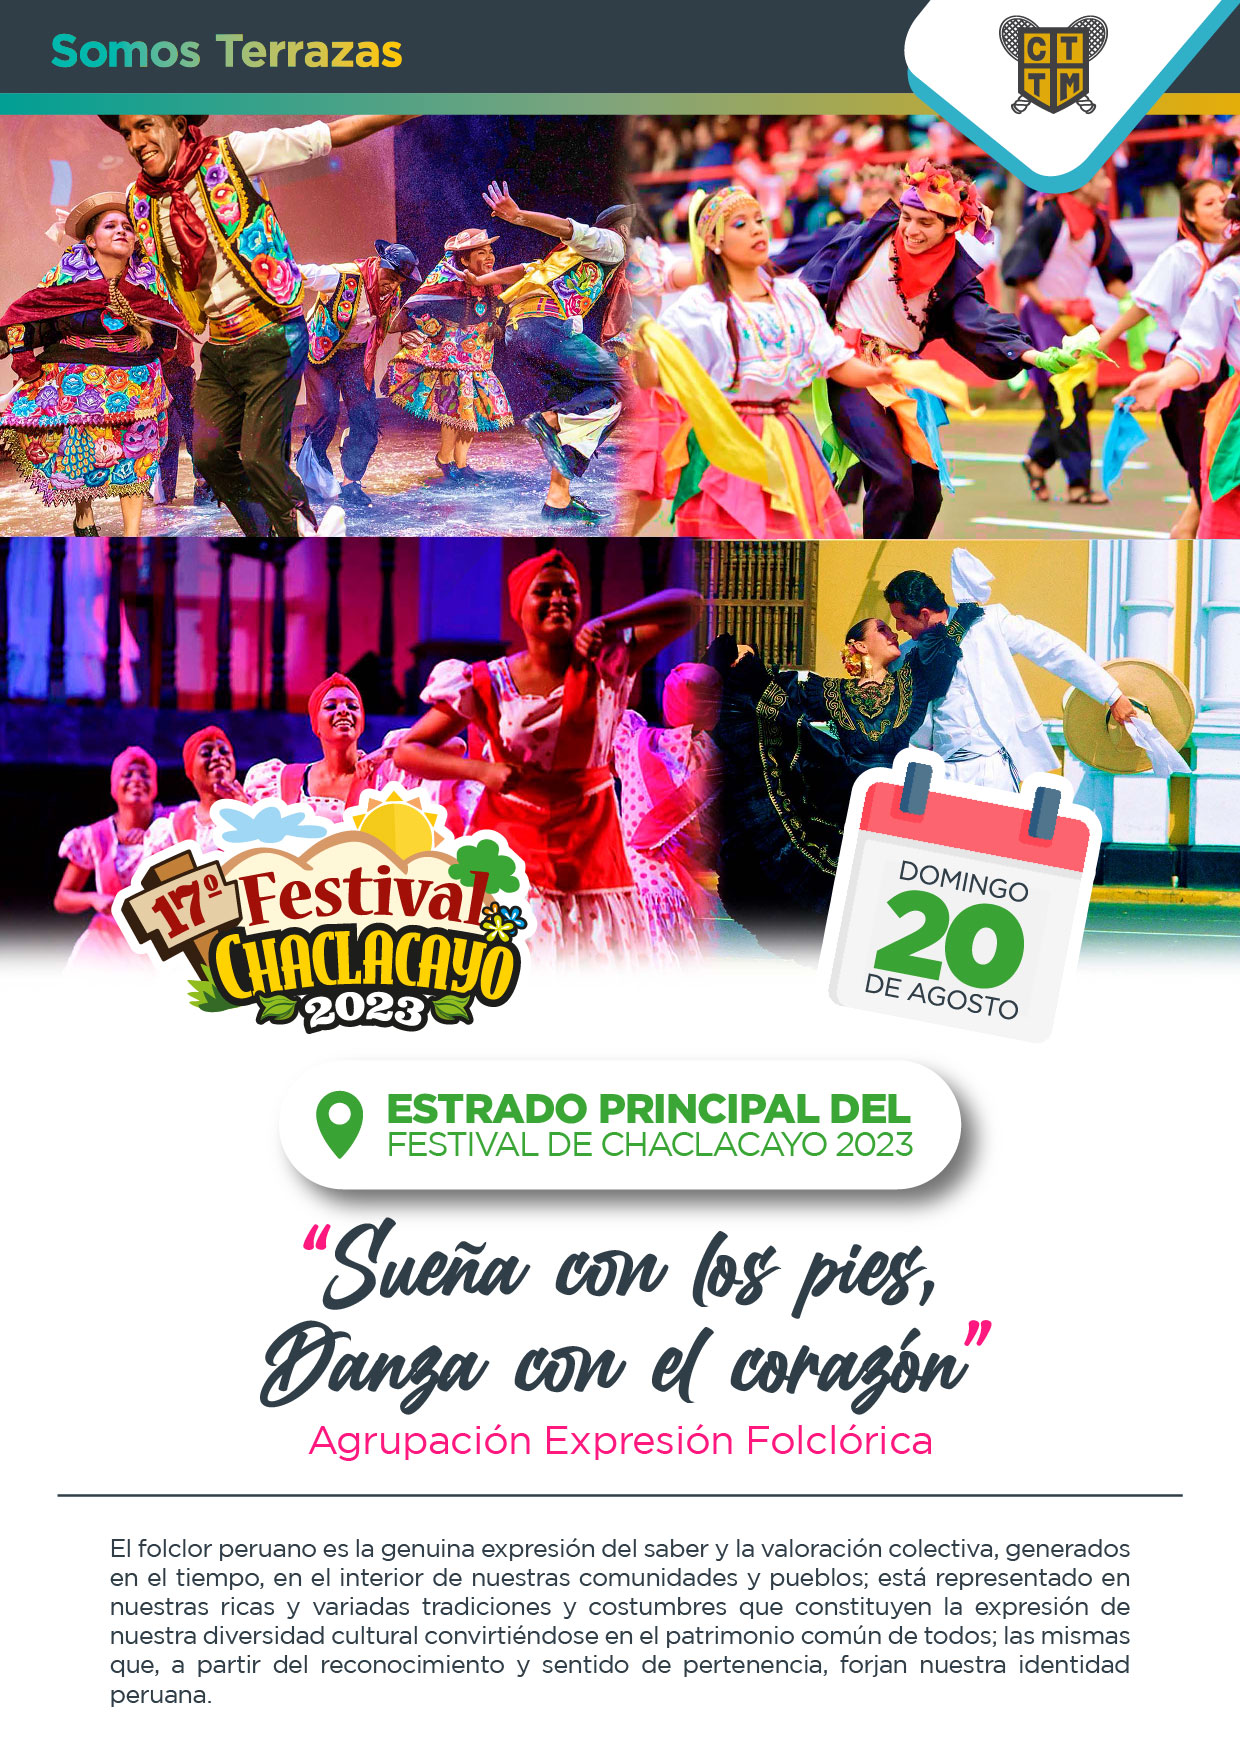 TE ESPERAMOS EN EL FESTIVAL CHACLACAYO 2023 🥳🍃☀️